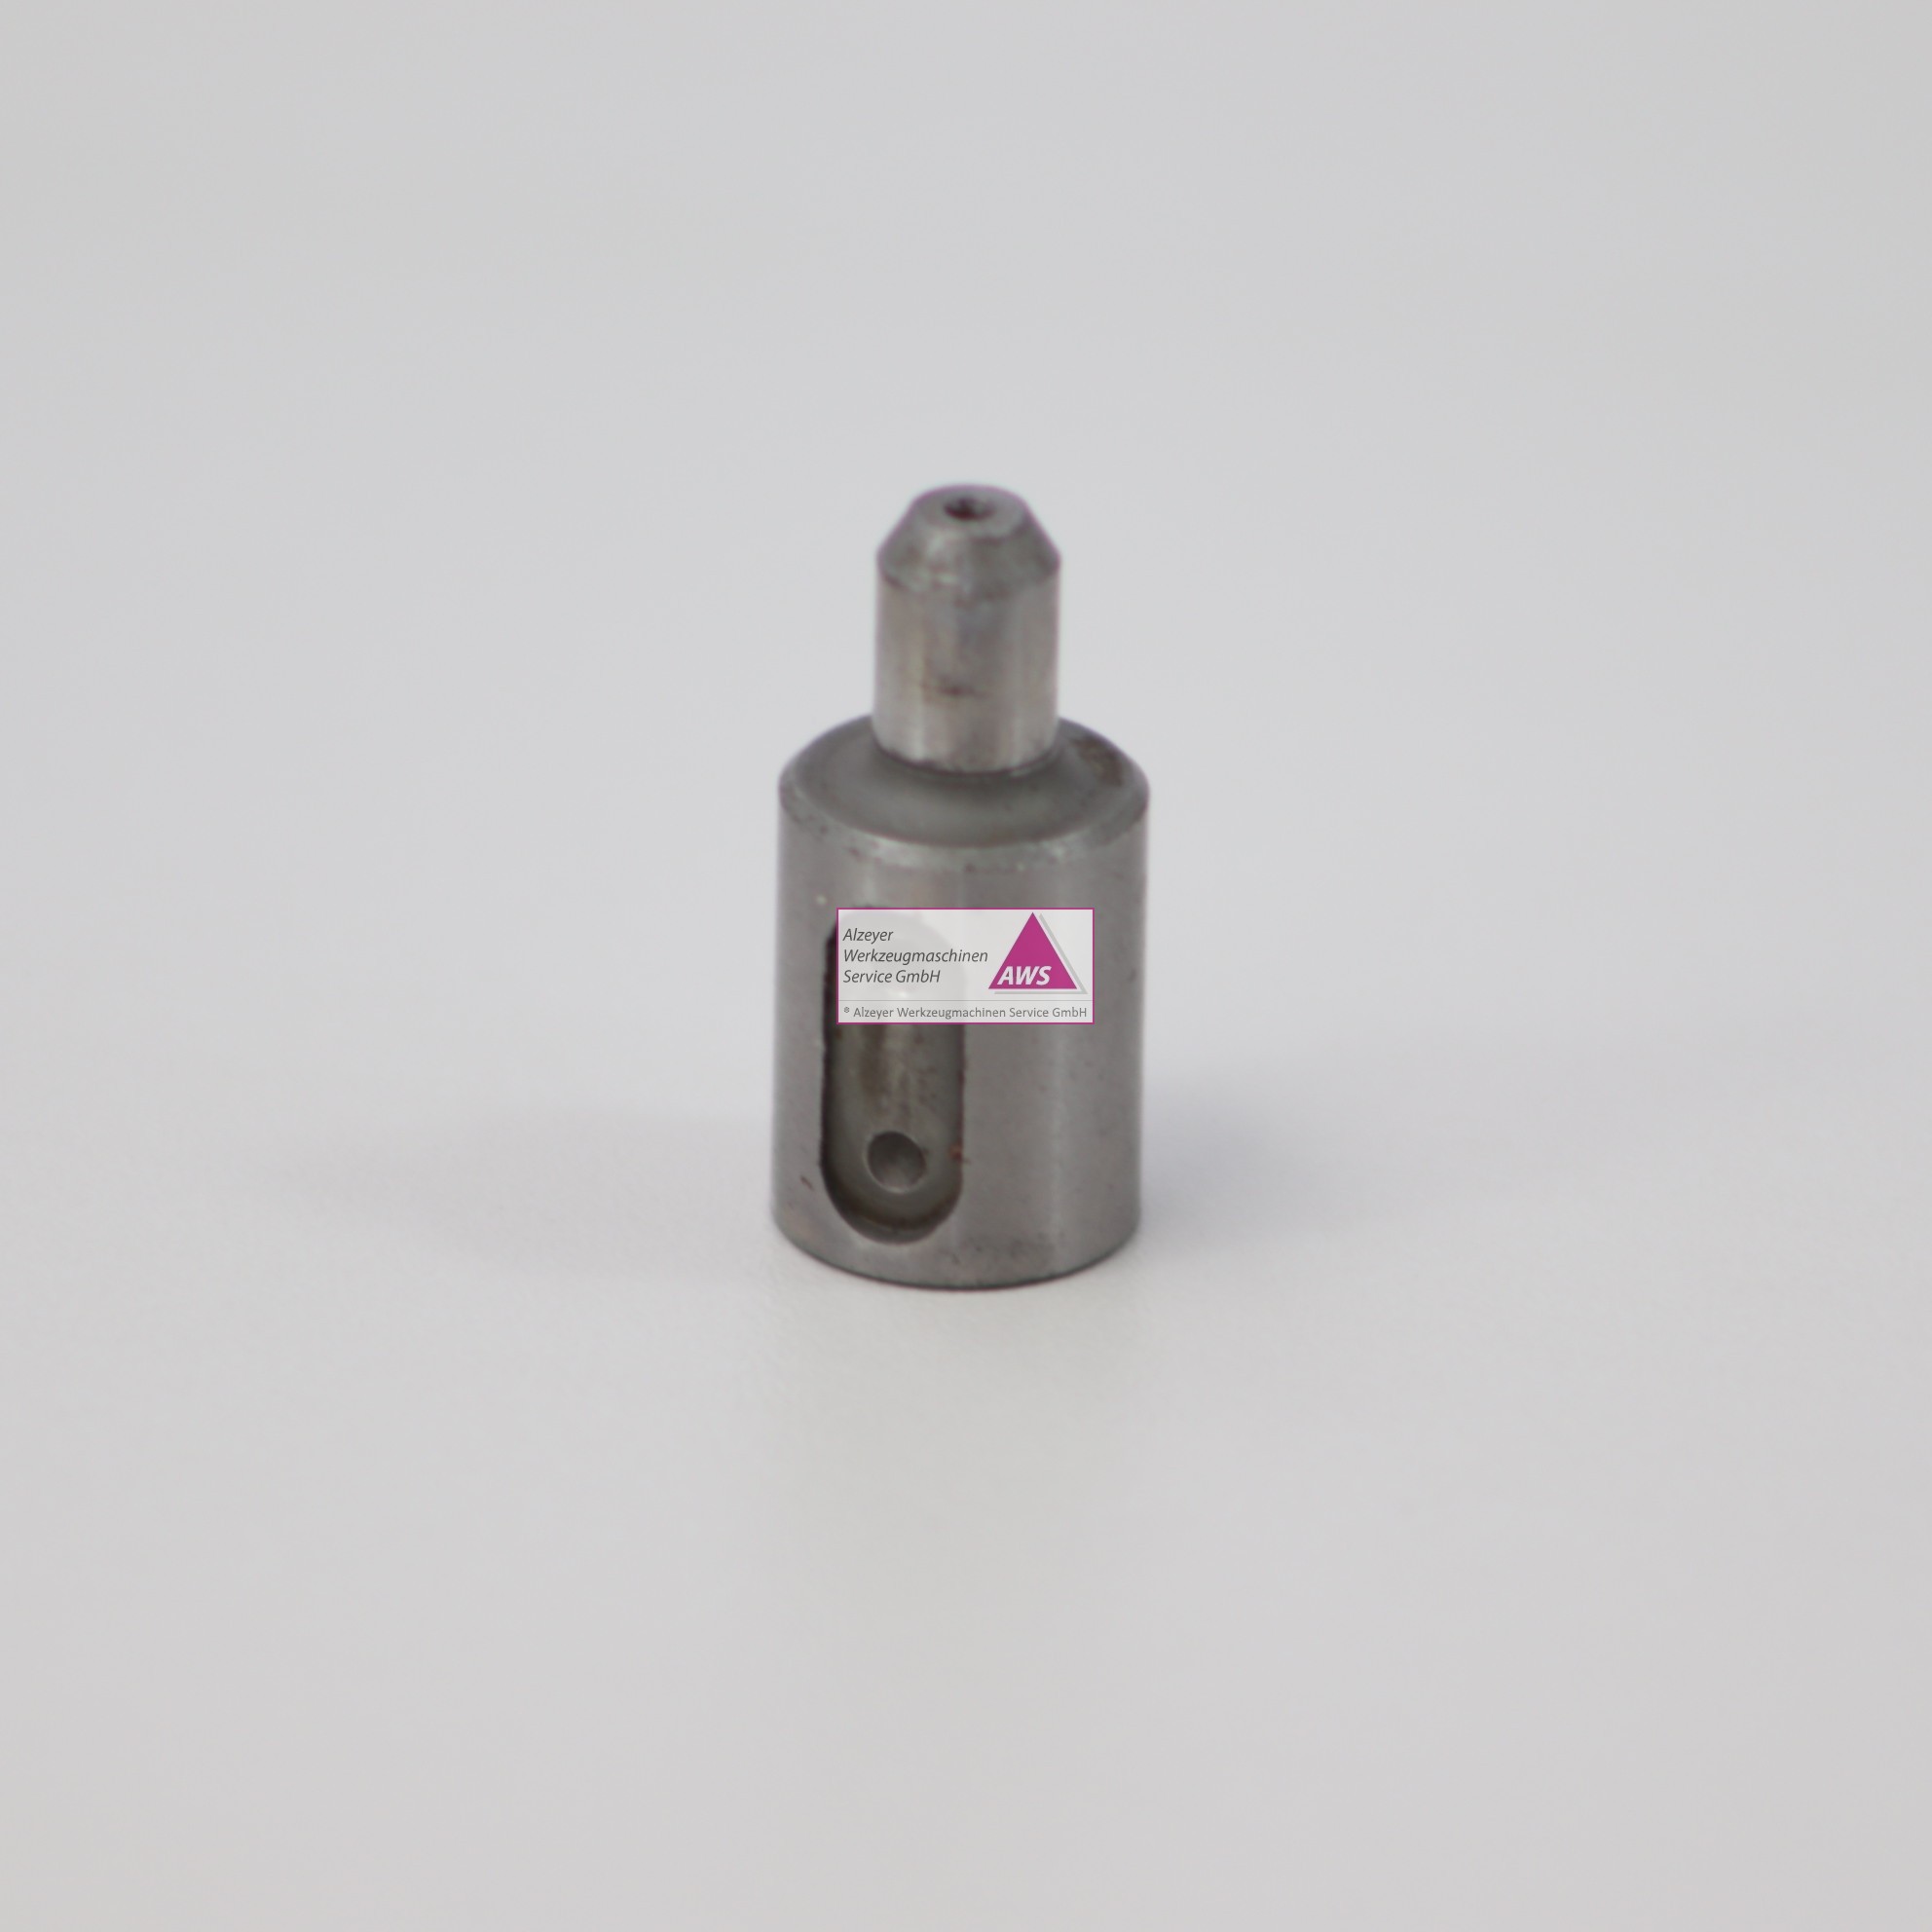 Pin für Gripper Mazak QT10 ATCM/C